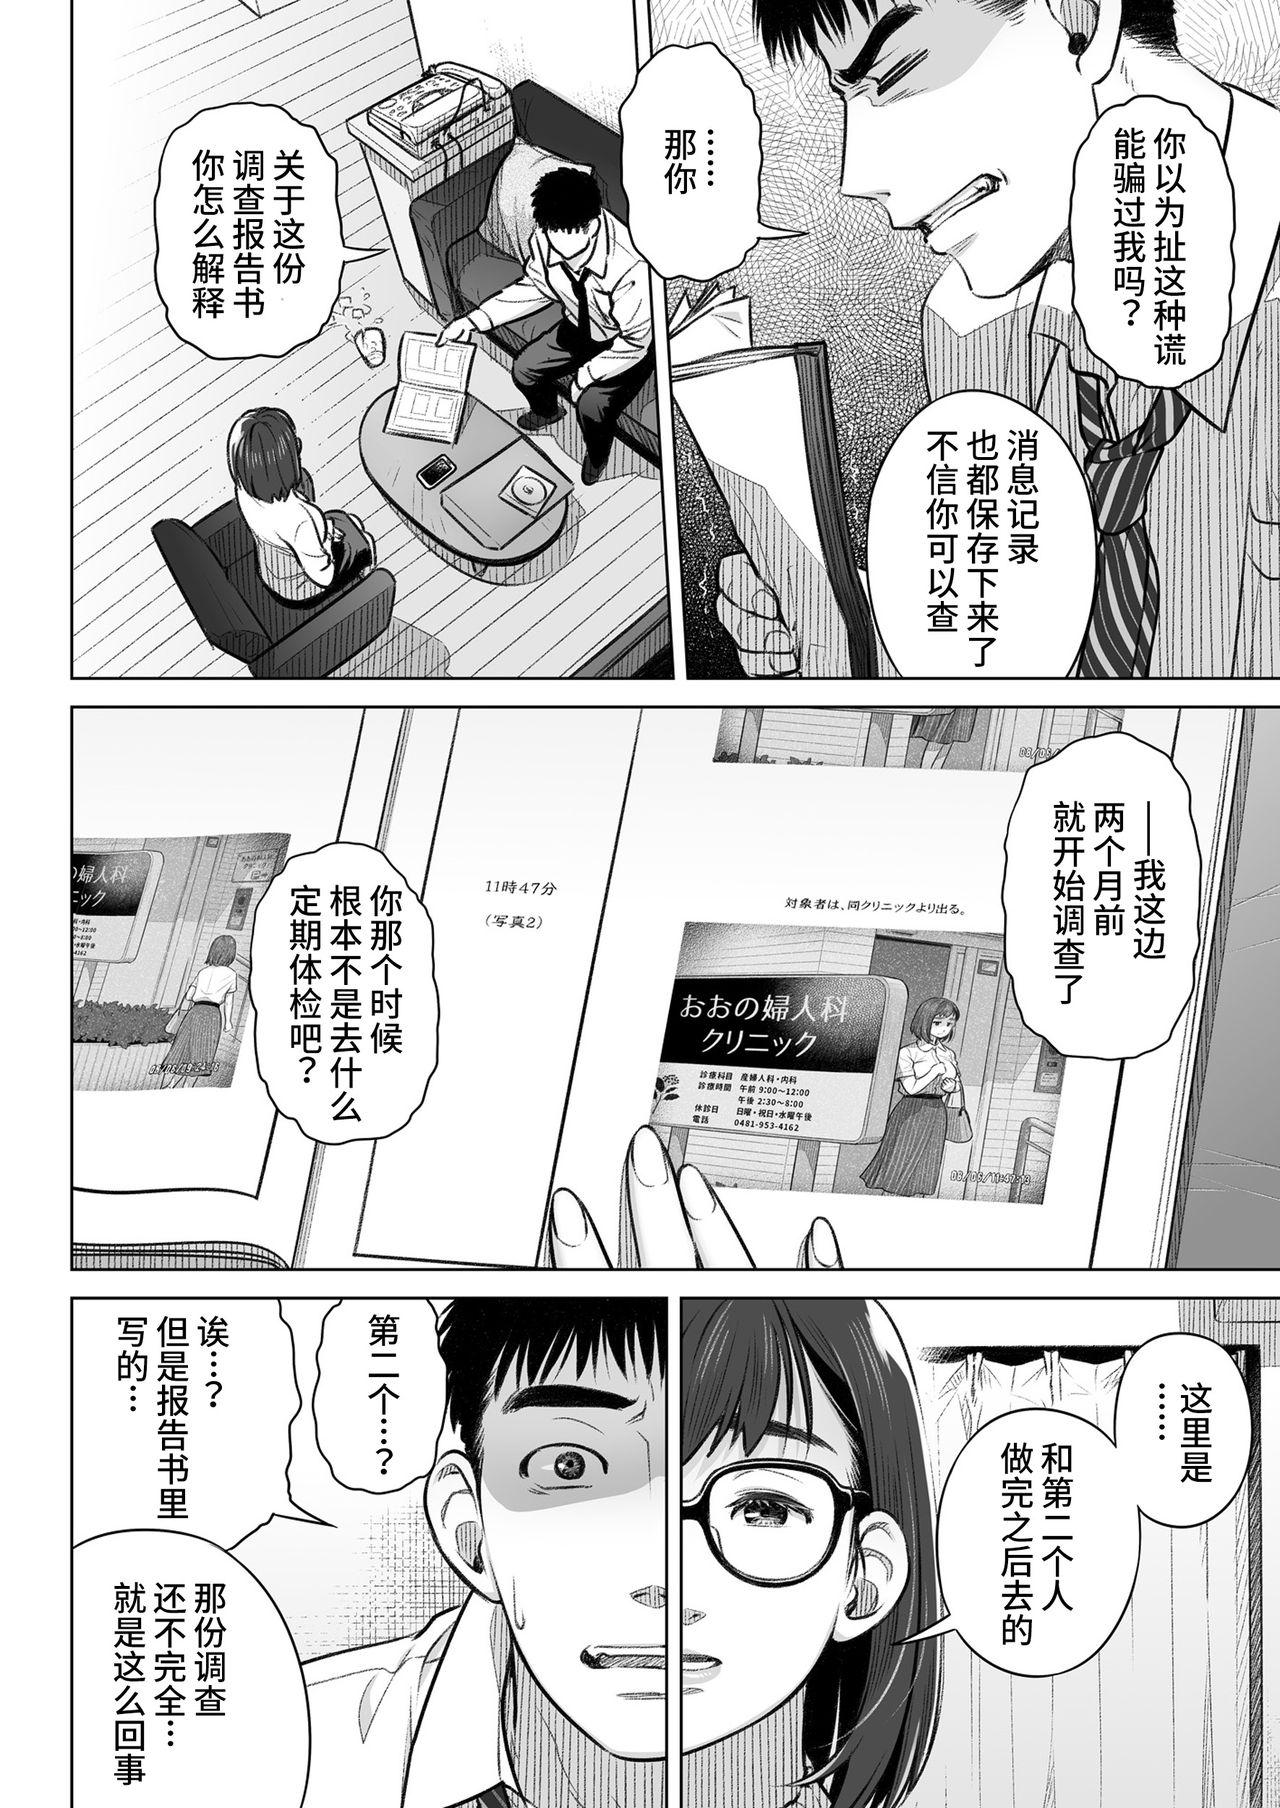 Femdom Kurata Akiko no Kokuhaku 1 - Confession of Akiko kurata Epsode 1 | 仓田有稀子的告白 第1话 - Original Masseuse - Page 7